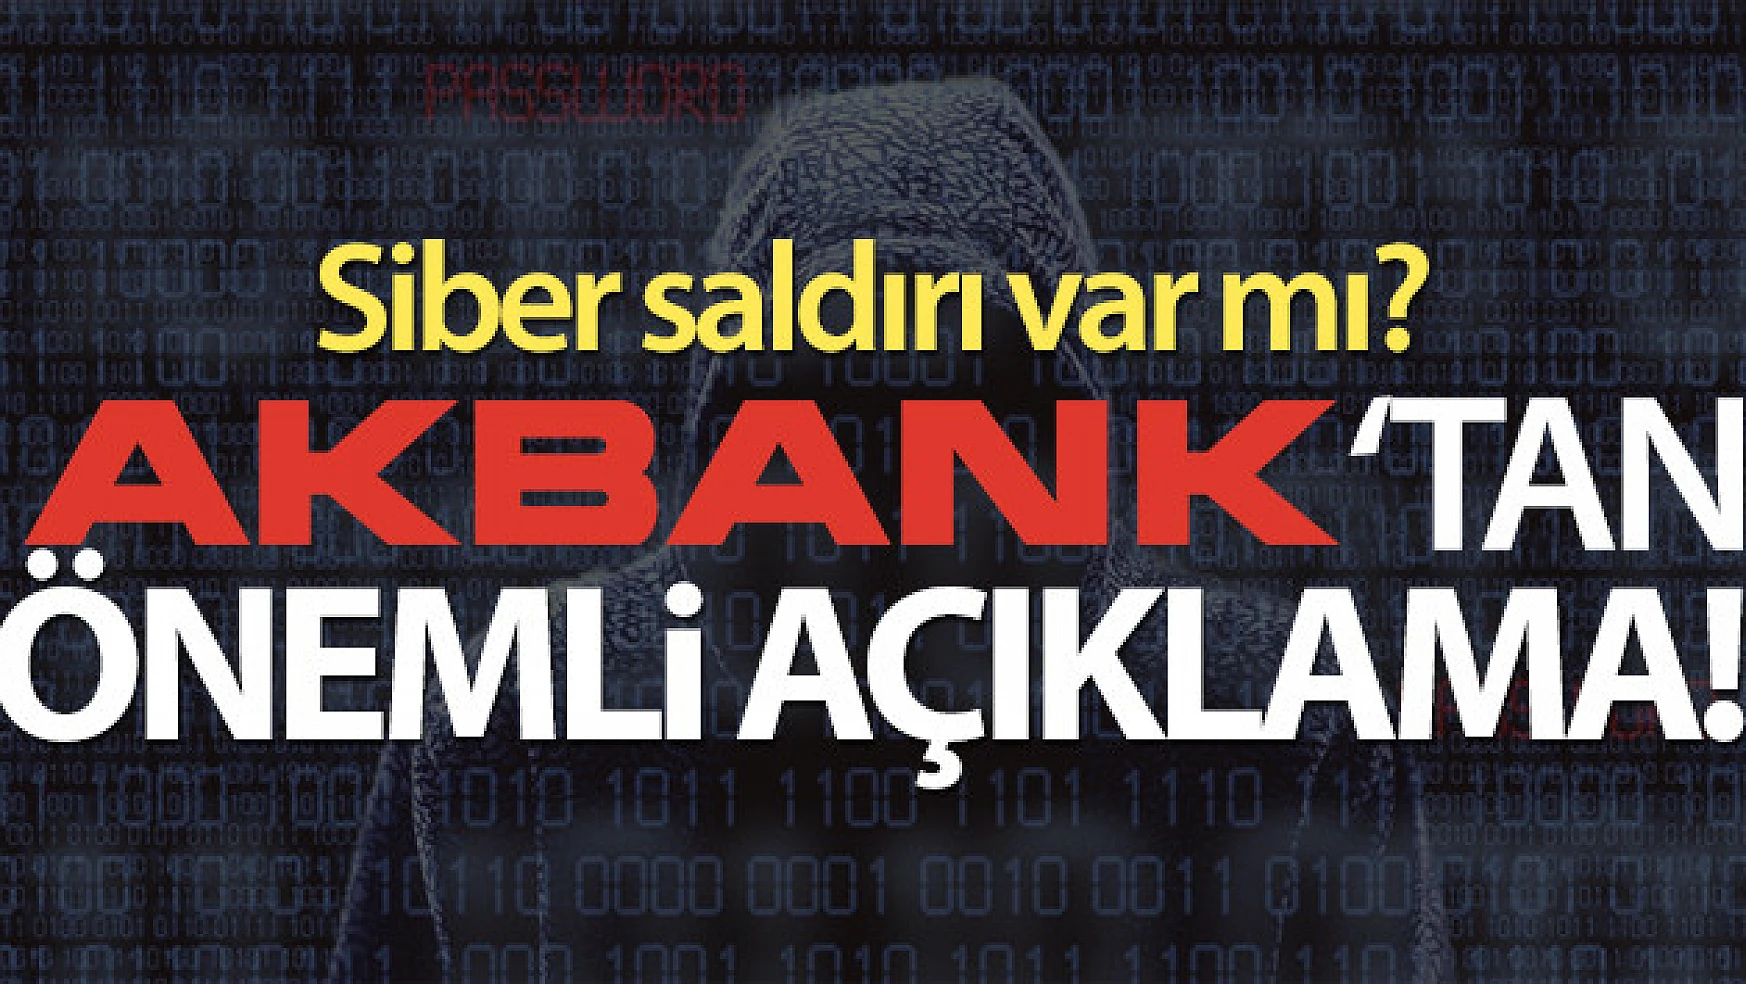 Akbank CEO'su Hakan Binbaşgil'den açıklama: 'Siber saldırı yok'